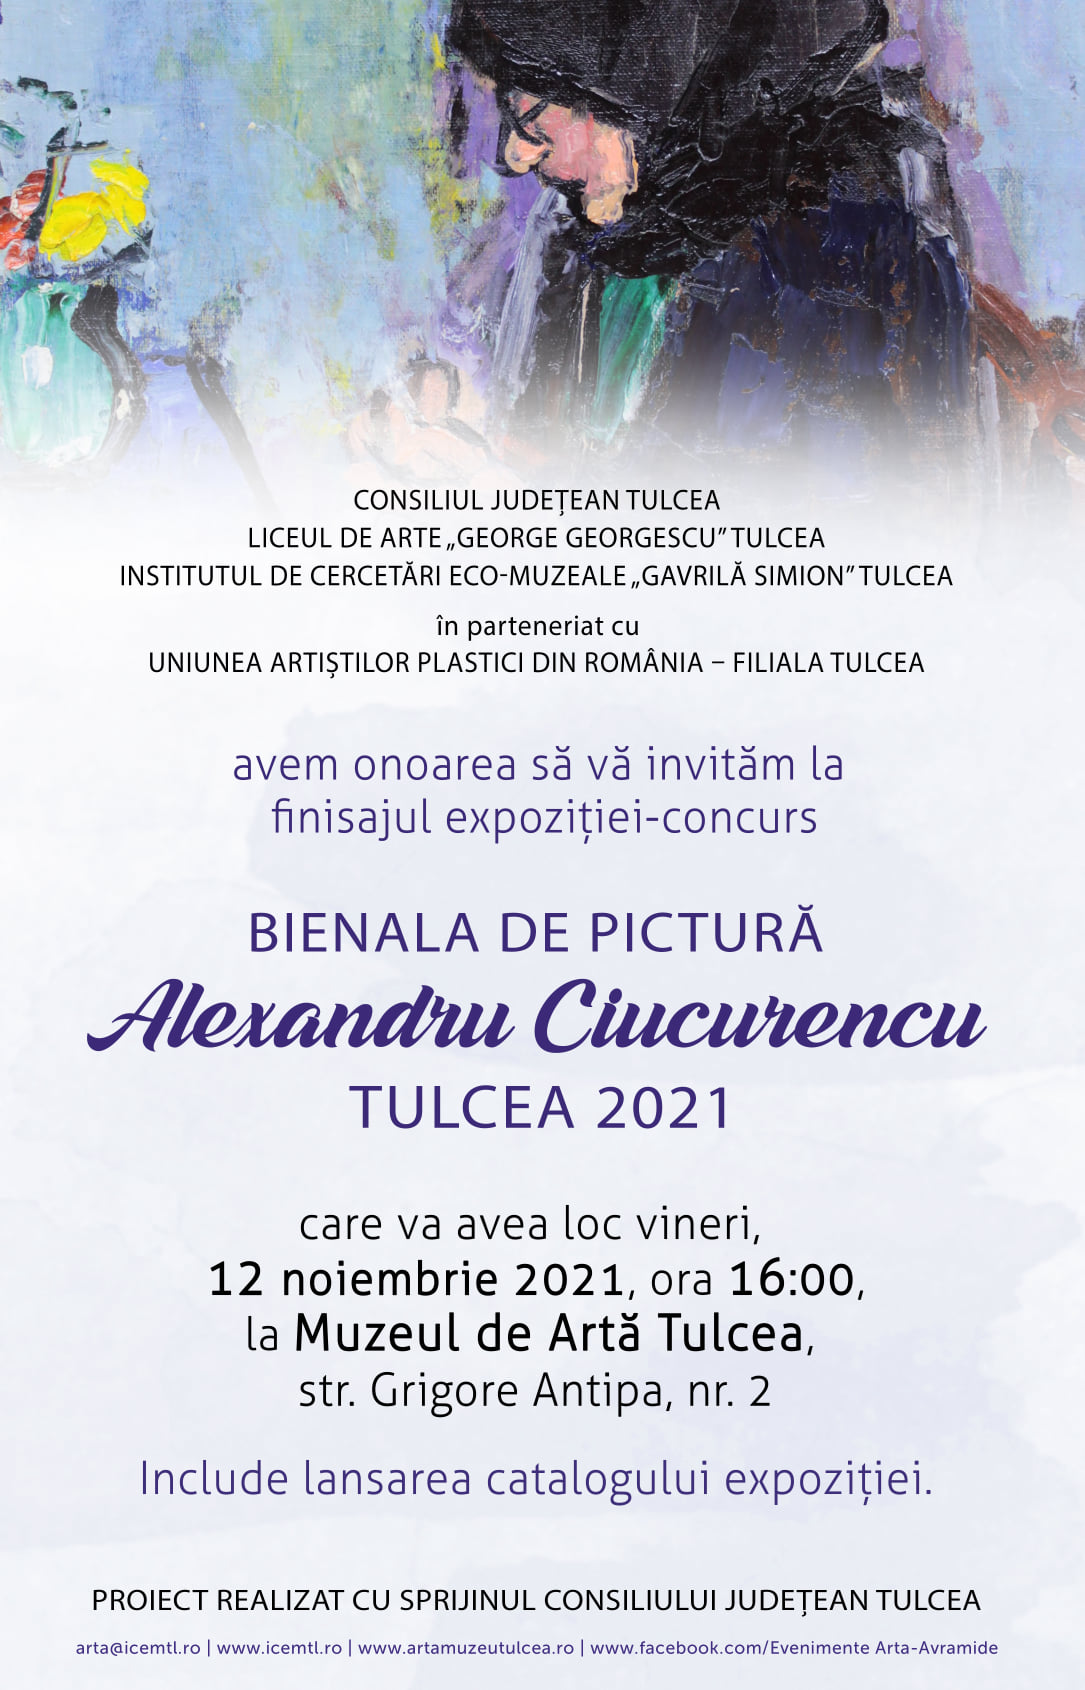 Institutul de Cercetări Eco-Muzeale ”Gavrilă Simion” Tulcea sărbătorește  ZIUA DOBROGEI-14 NOIEMBRIE 2021 –